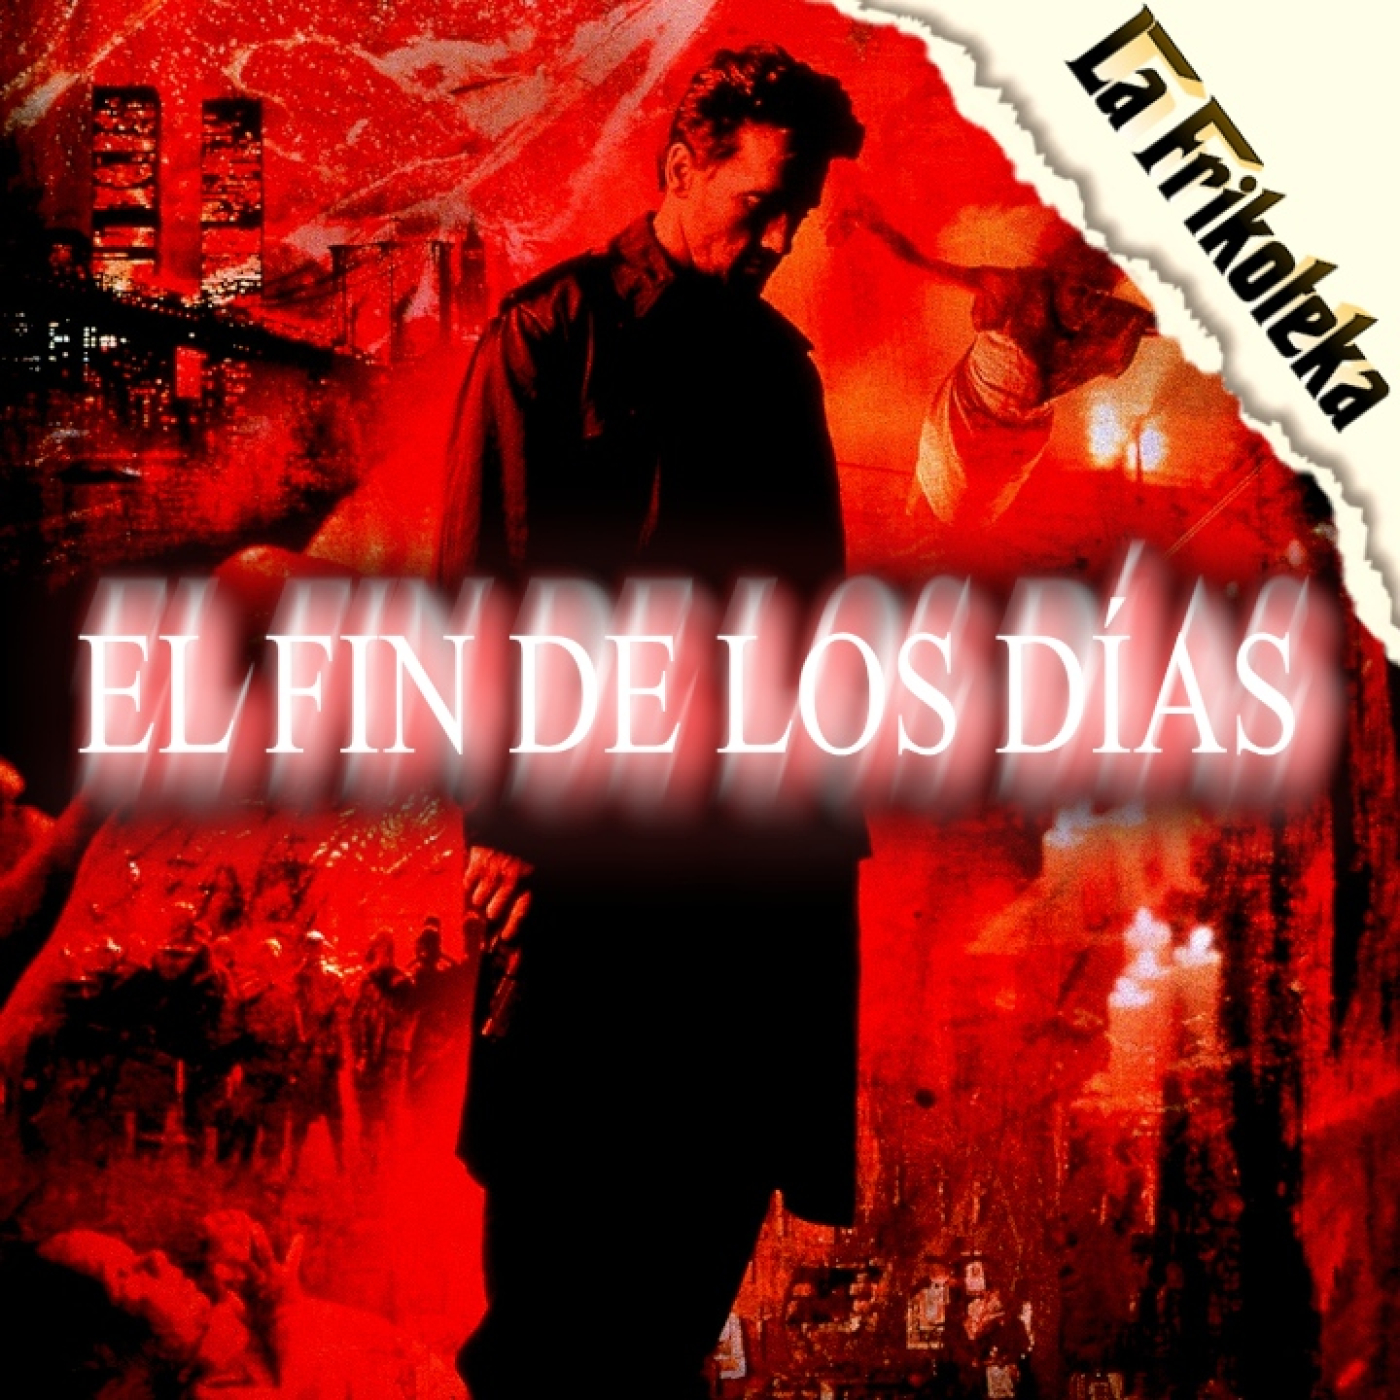 147 - El fin de los dias (1999) - Episodio exclusivo para mecenas